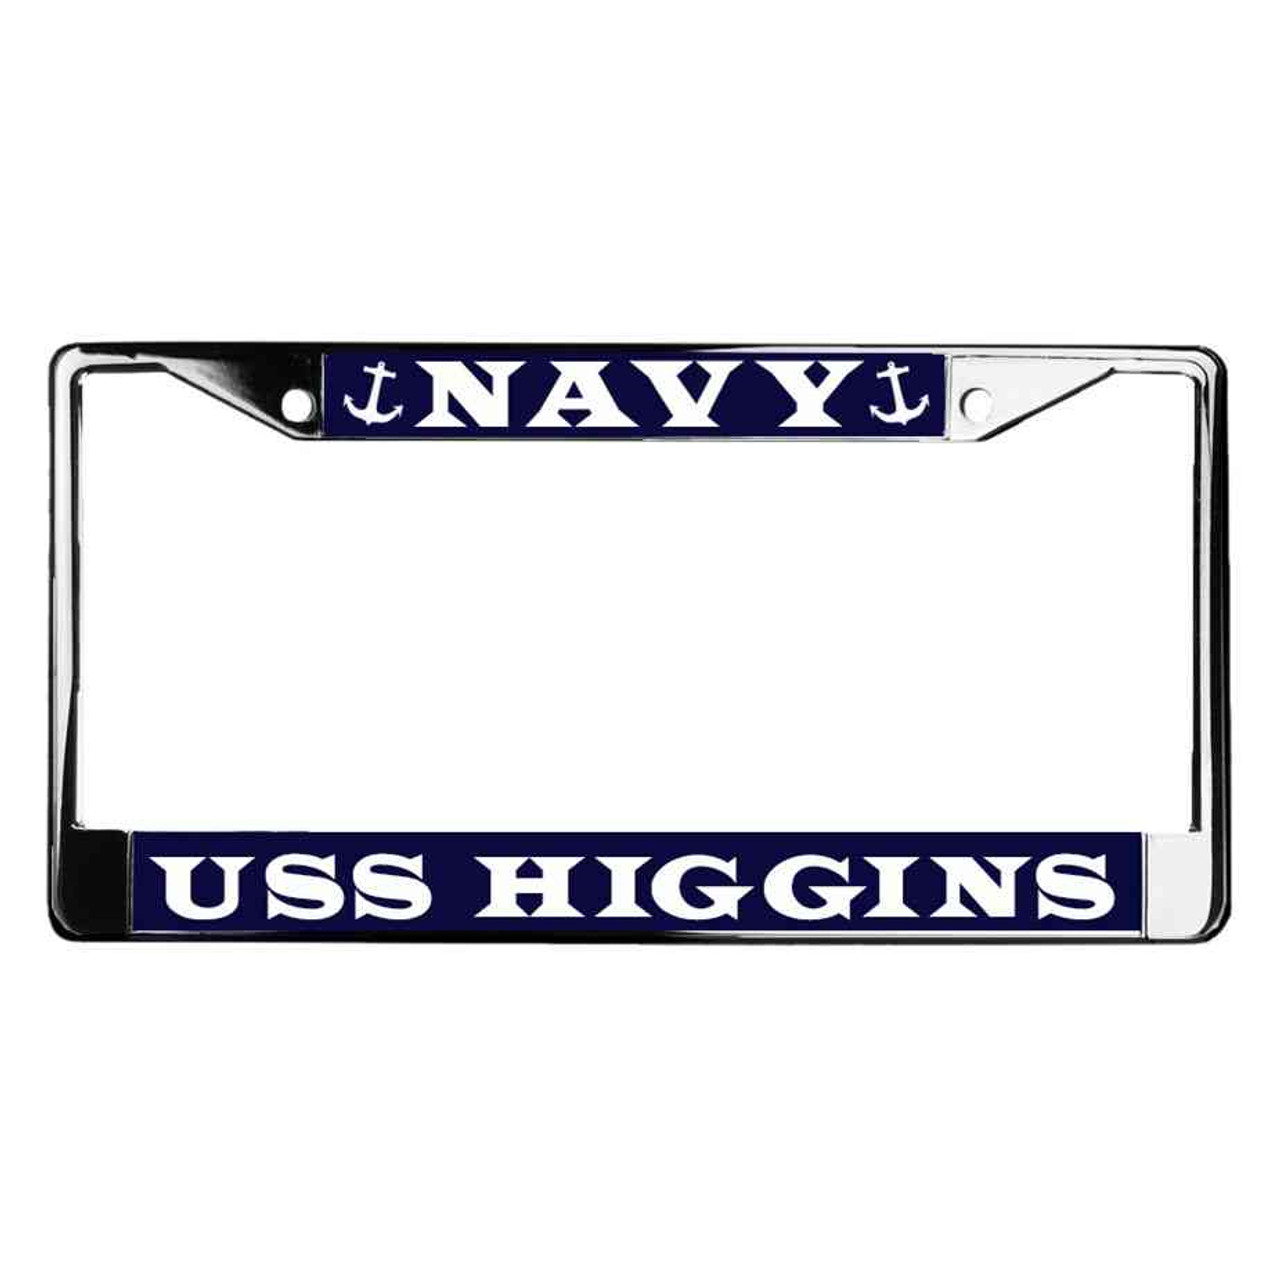 uss higgins license plate frame